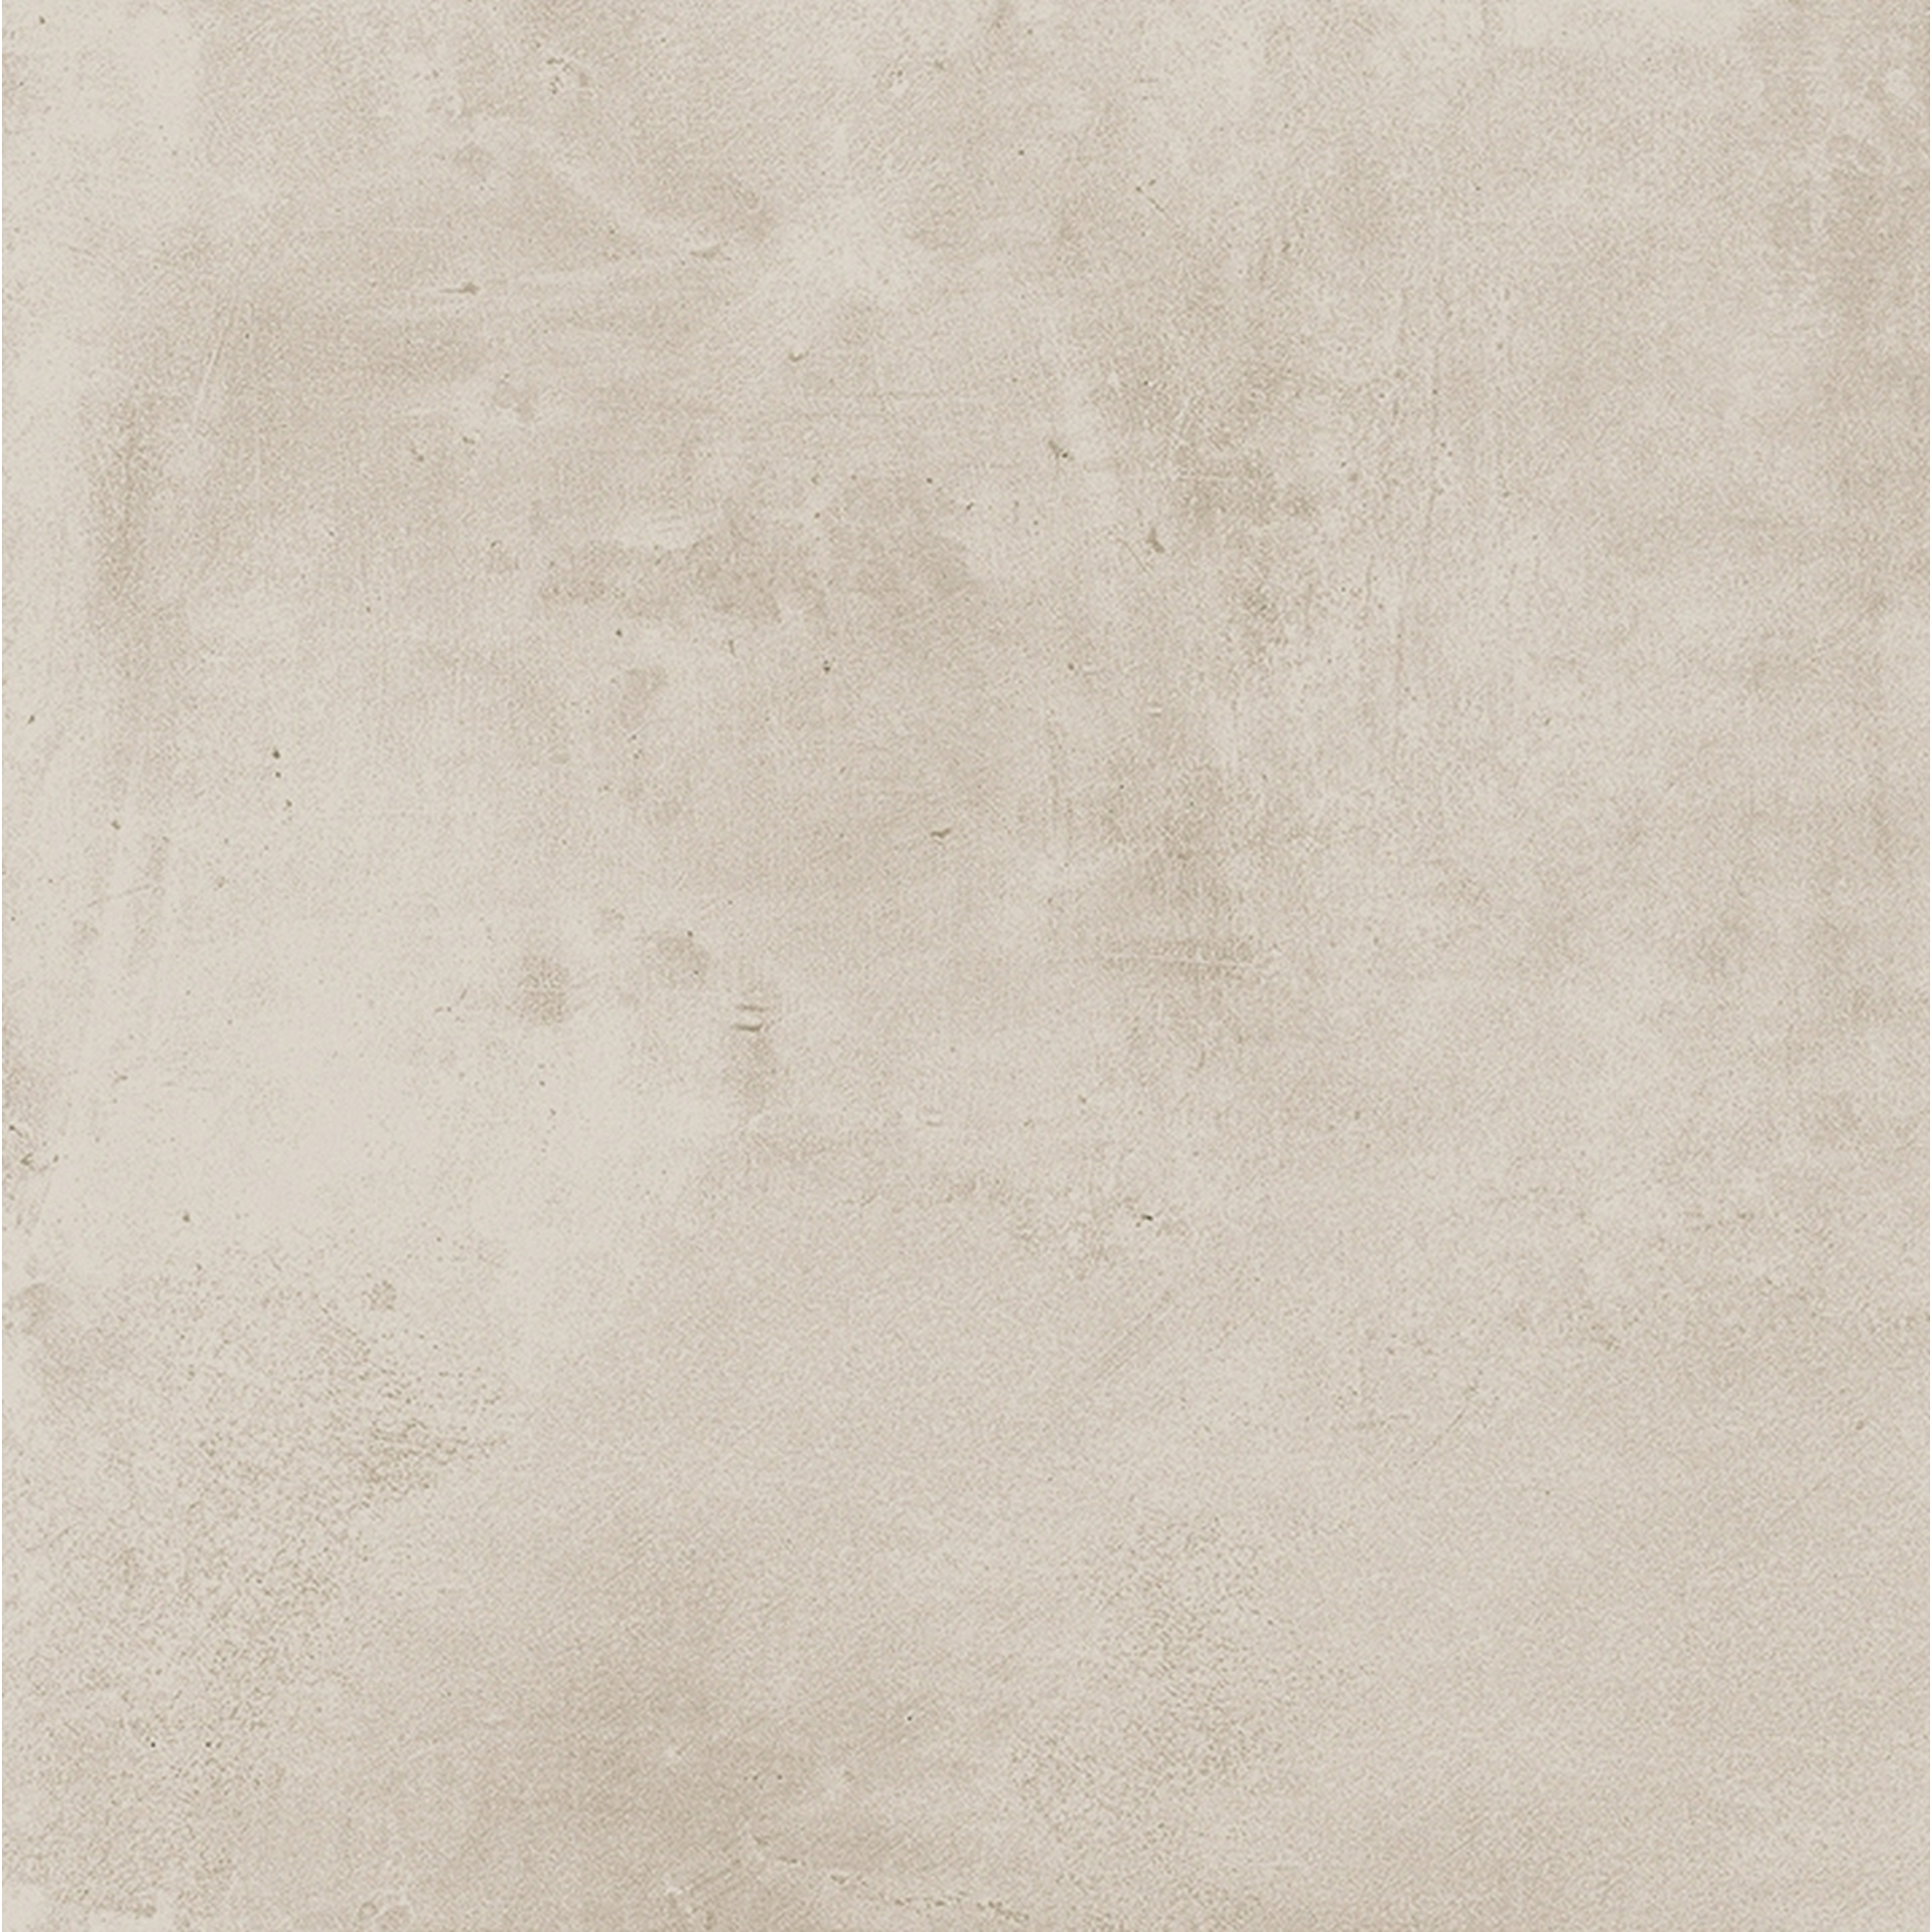 Terrassenplatte 'Taina' Feinsteinzeug beige 80 cm x 80 cm x 2 cm + product picture